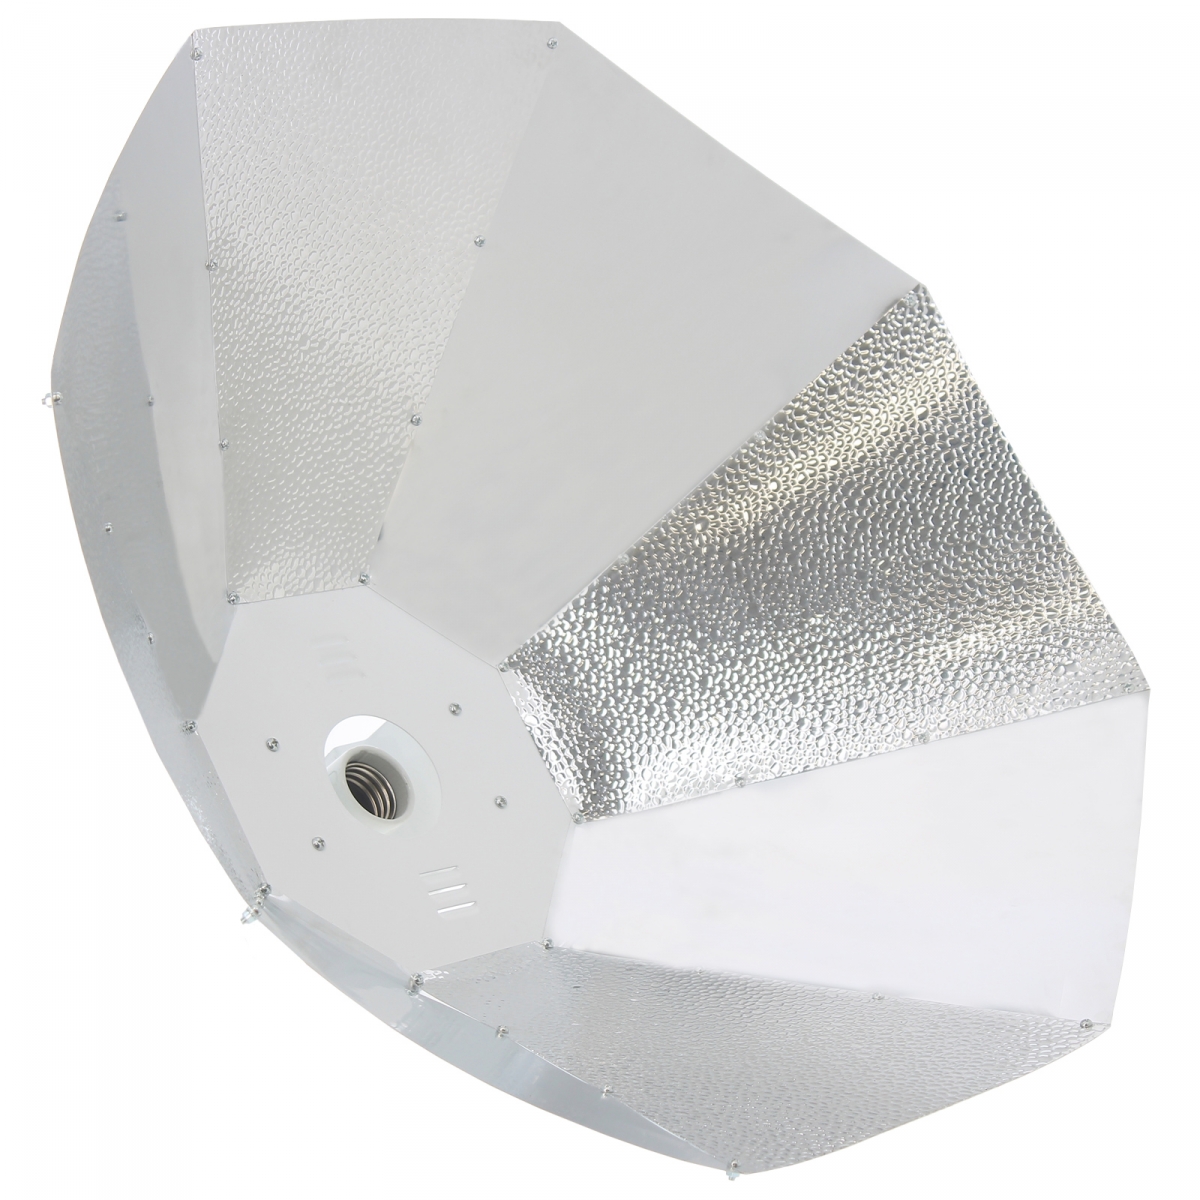 Réflecteur parabolic silver pour ampoule MH, HPS et CFL